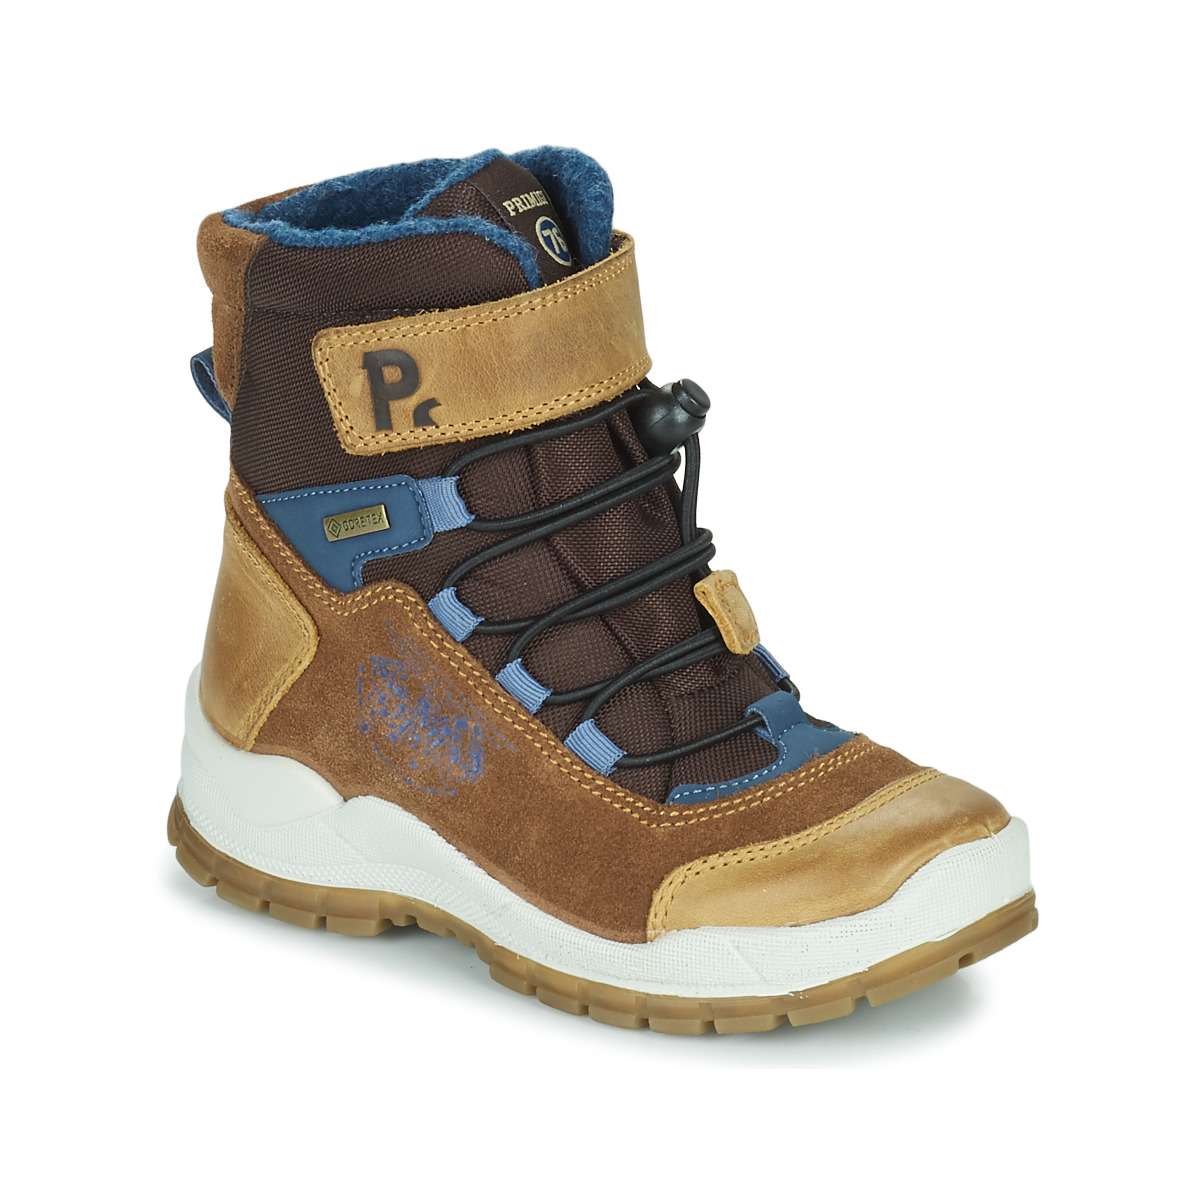 Παπούτσια Αγόρι Snow boots Primigi HANS GTX Brown